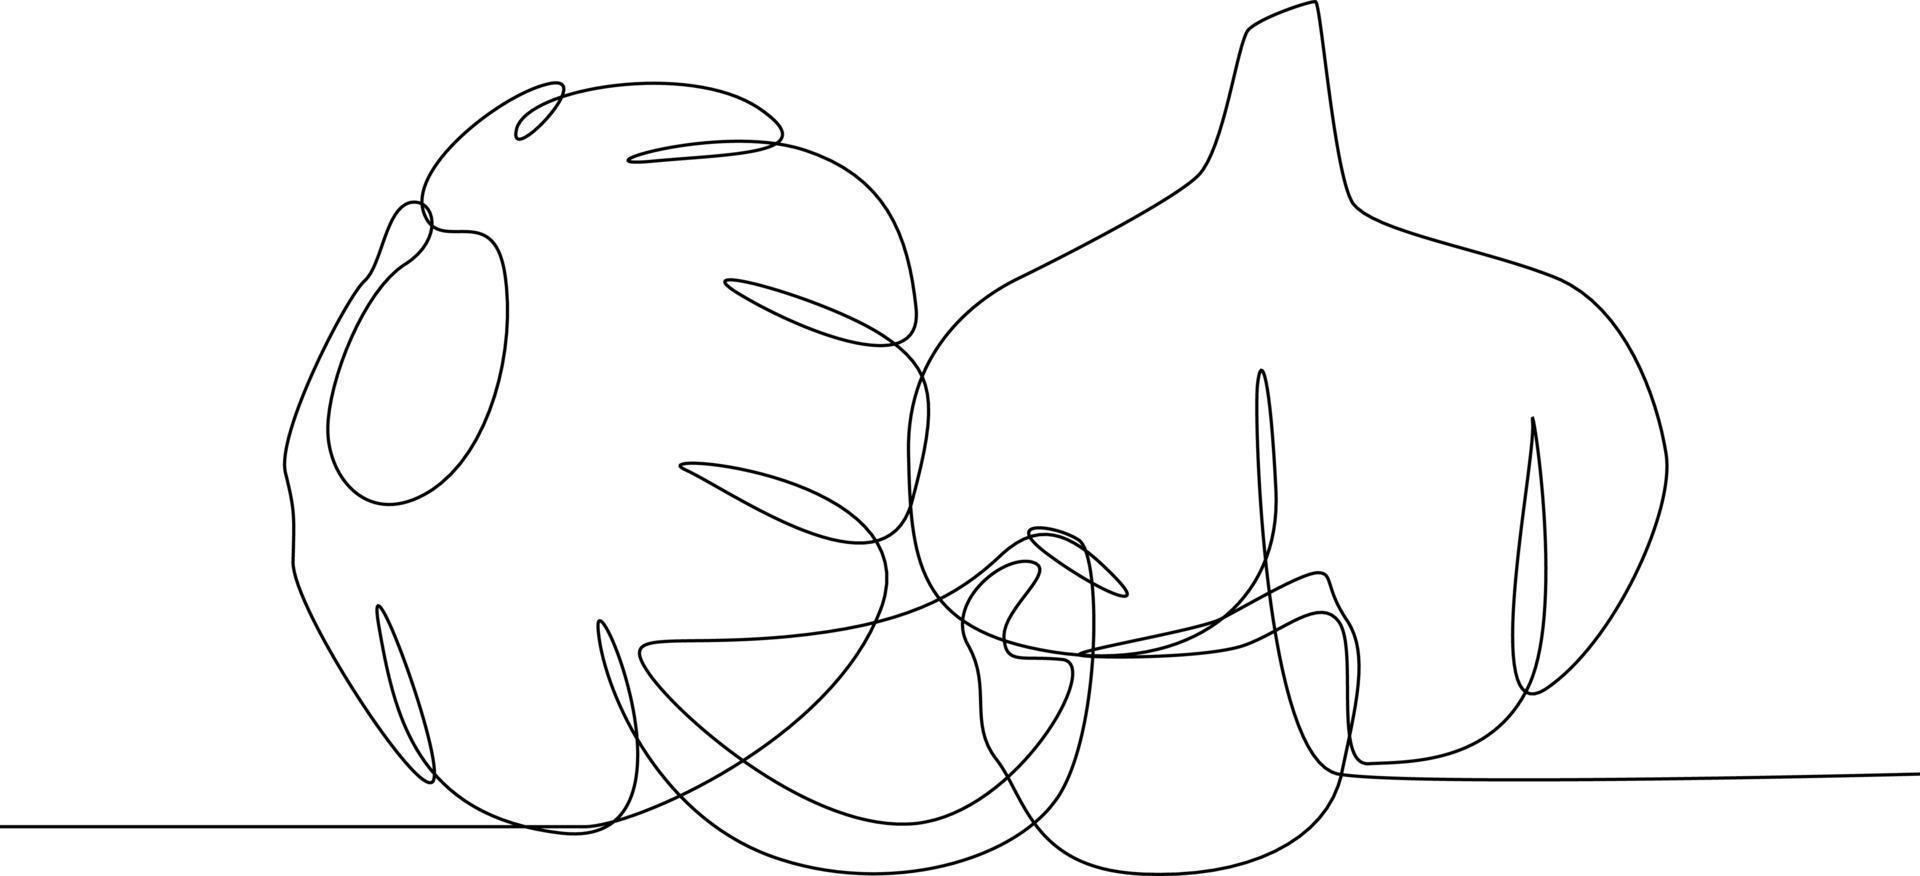 Célibataire une ligne dessin de deux clous de girofle de Ail. herbes et épices concept. continu ligne dessin conception graphique vecteur illustration.